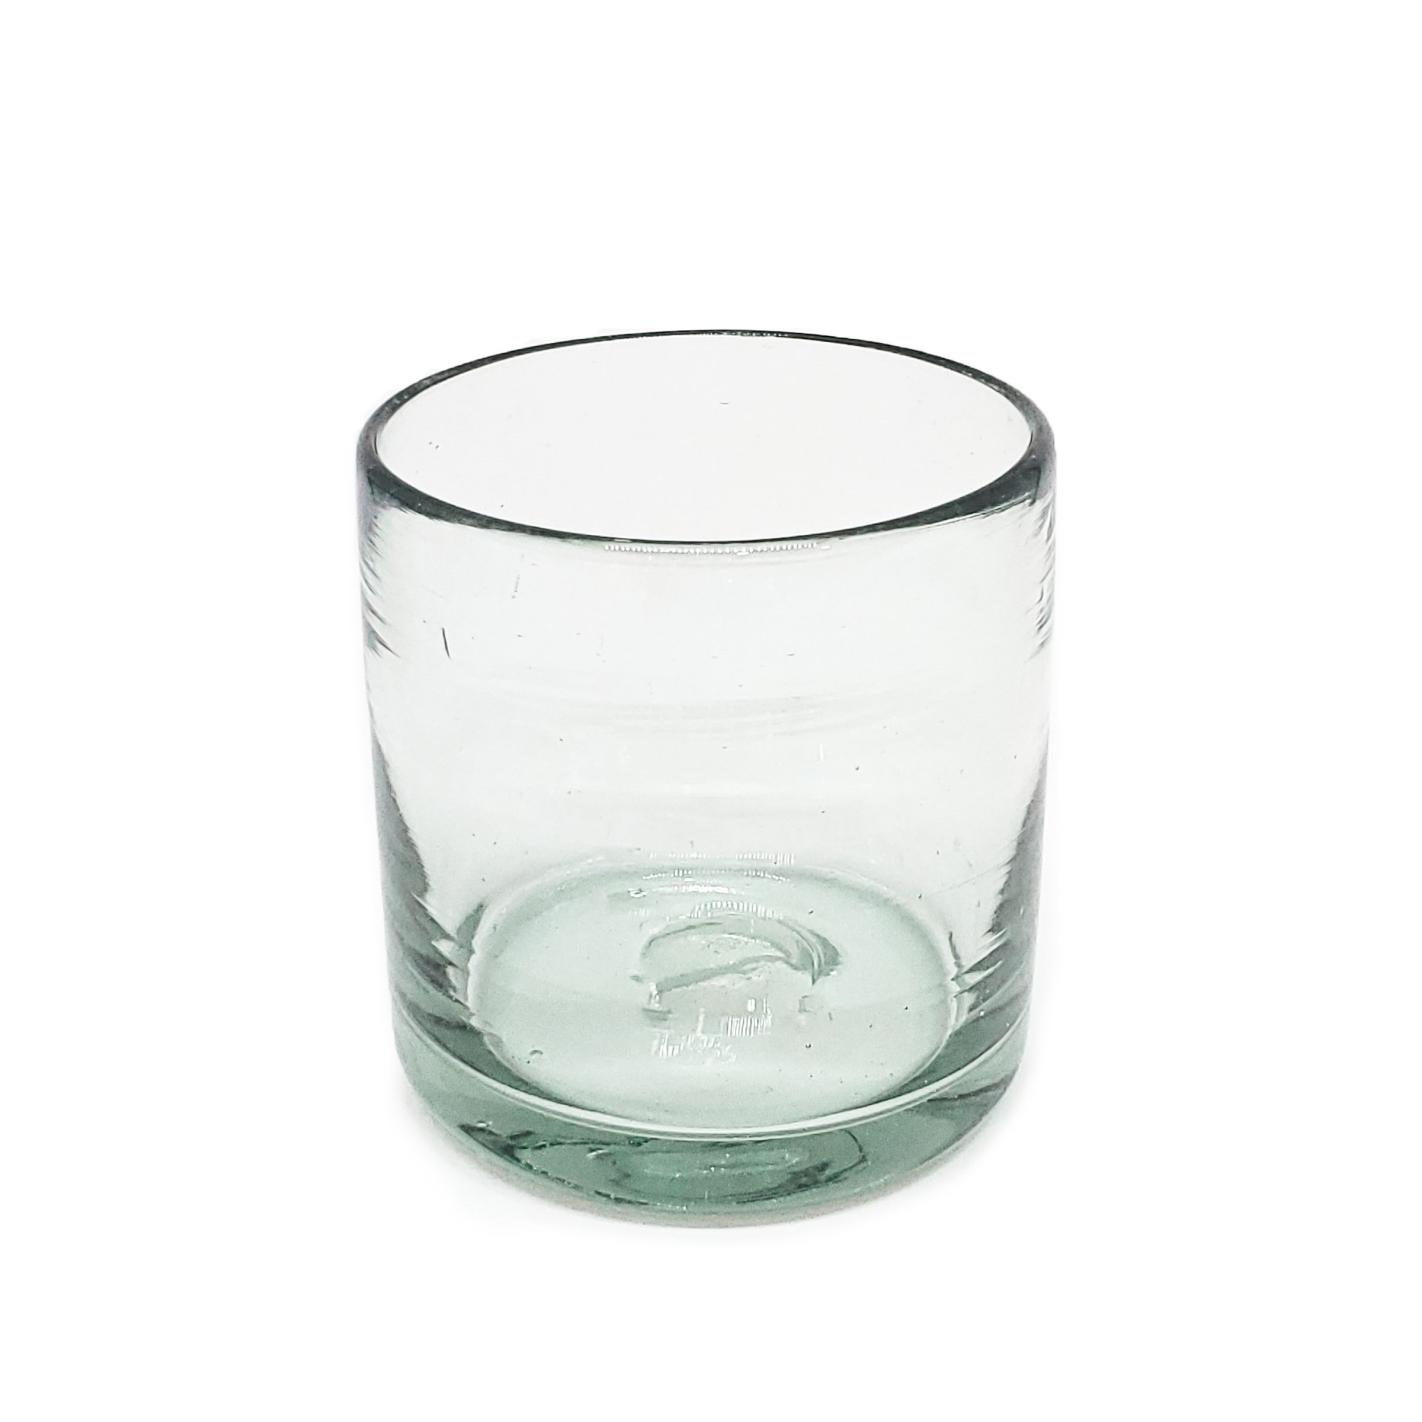 Ofertas / Juego de 6 vasos DOF 8oz Transparentes / stos artesanales vasos le darn un toque clsico a su bebida favorita.